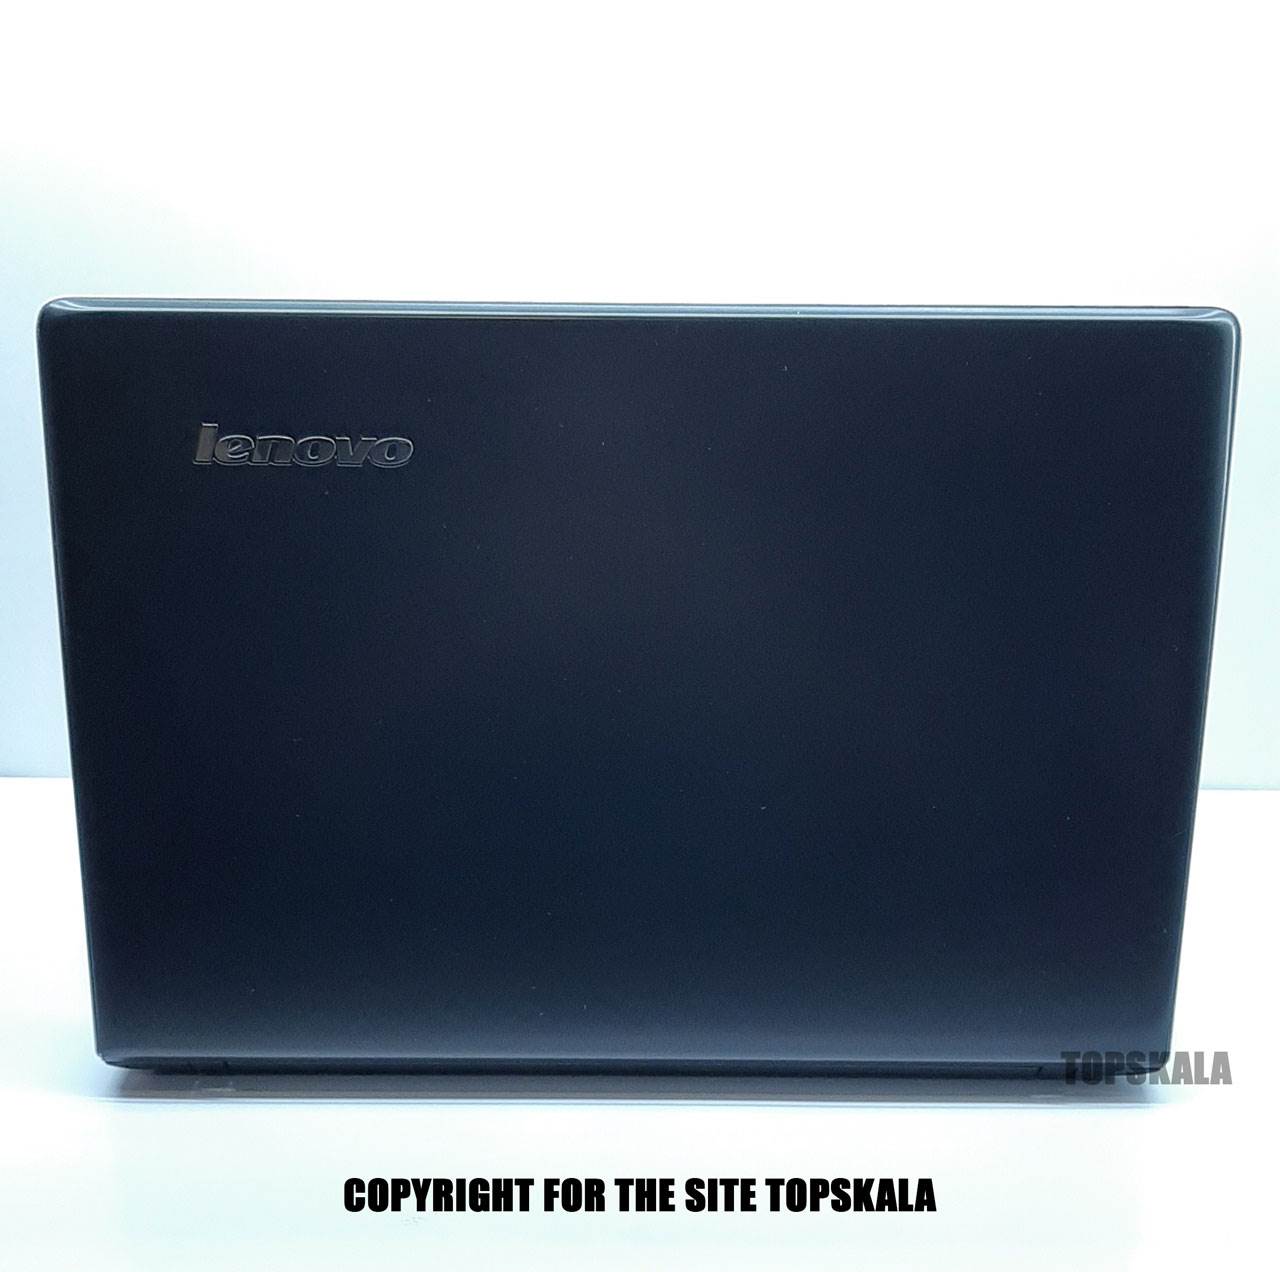 لپ تاپ استوک لنوو مدل Lenovo iDeaPad 500 با مشخصات i7-6th-12GB-1TB-SSHD-4GB-AMD-Radeon-m350laptop-stock-Lenovo-model-ideapad-500-i7-6th-ram-12gb-1tb-gpu-4gb-amd-radeon